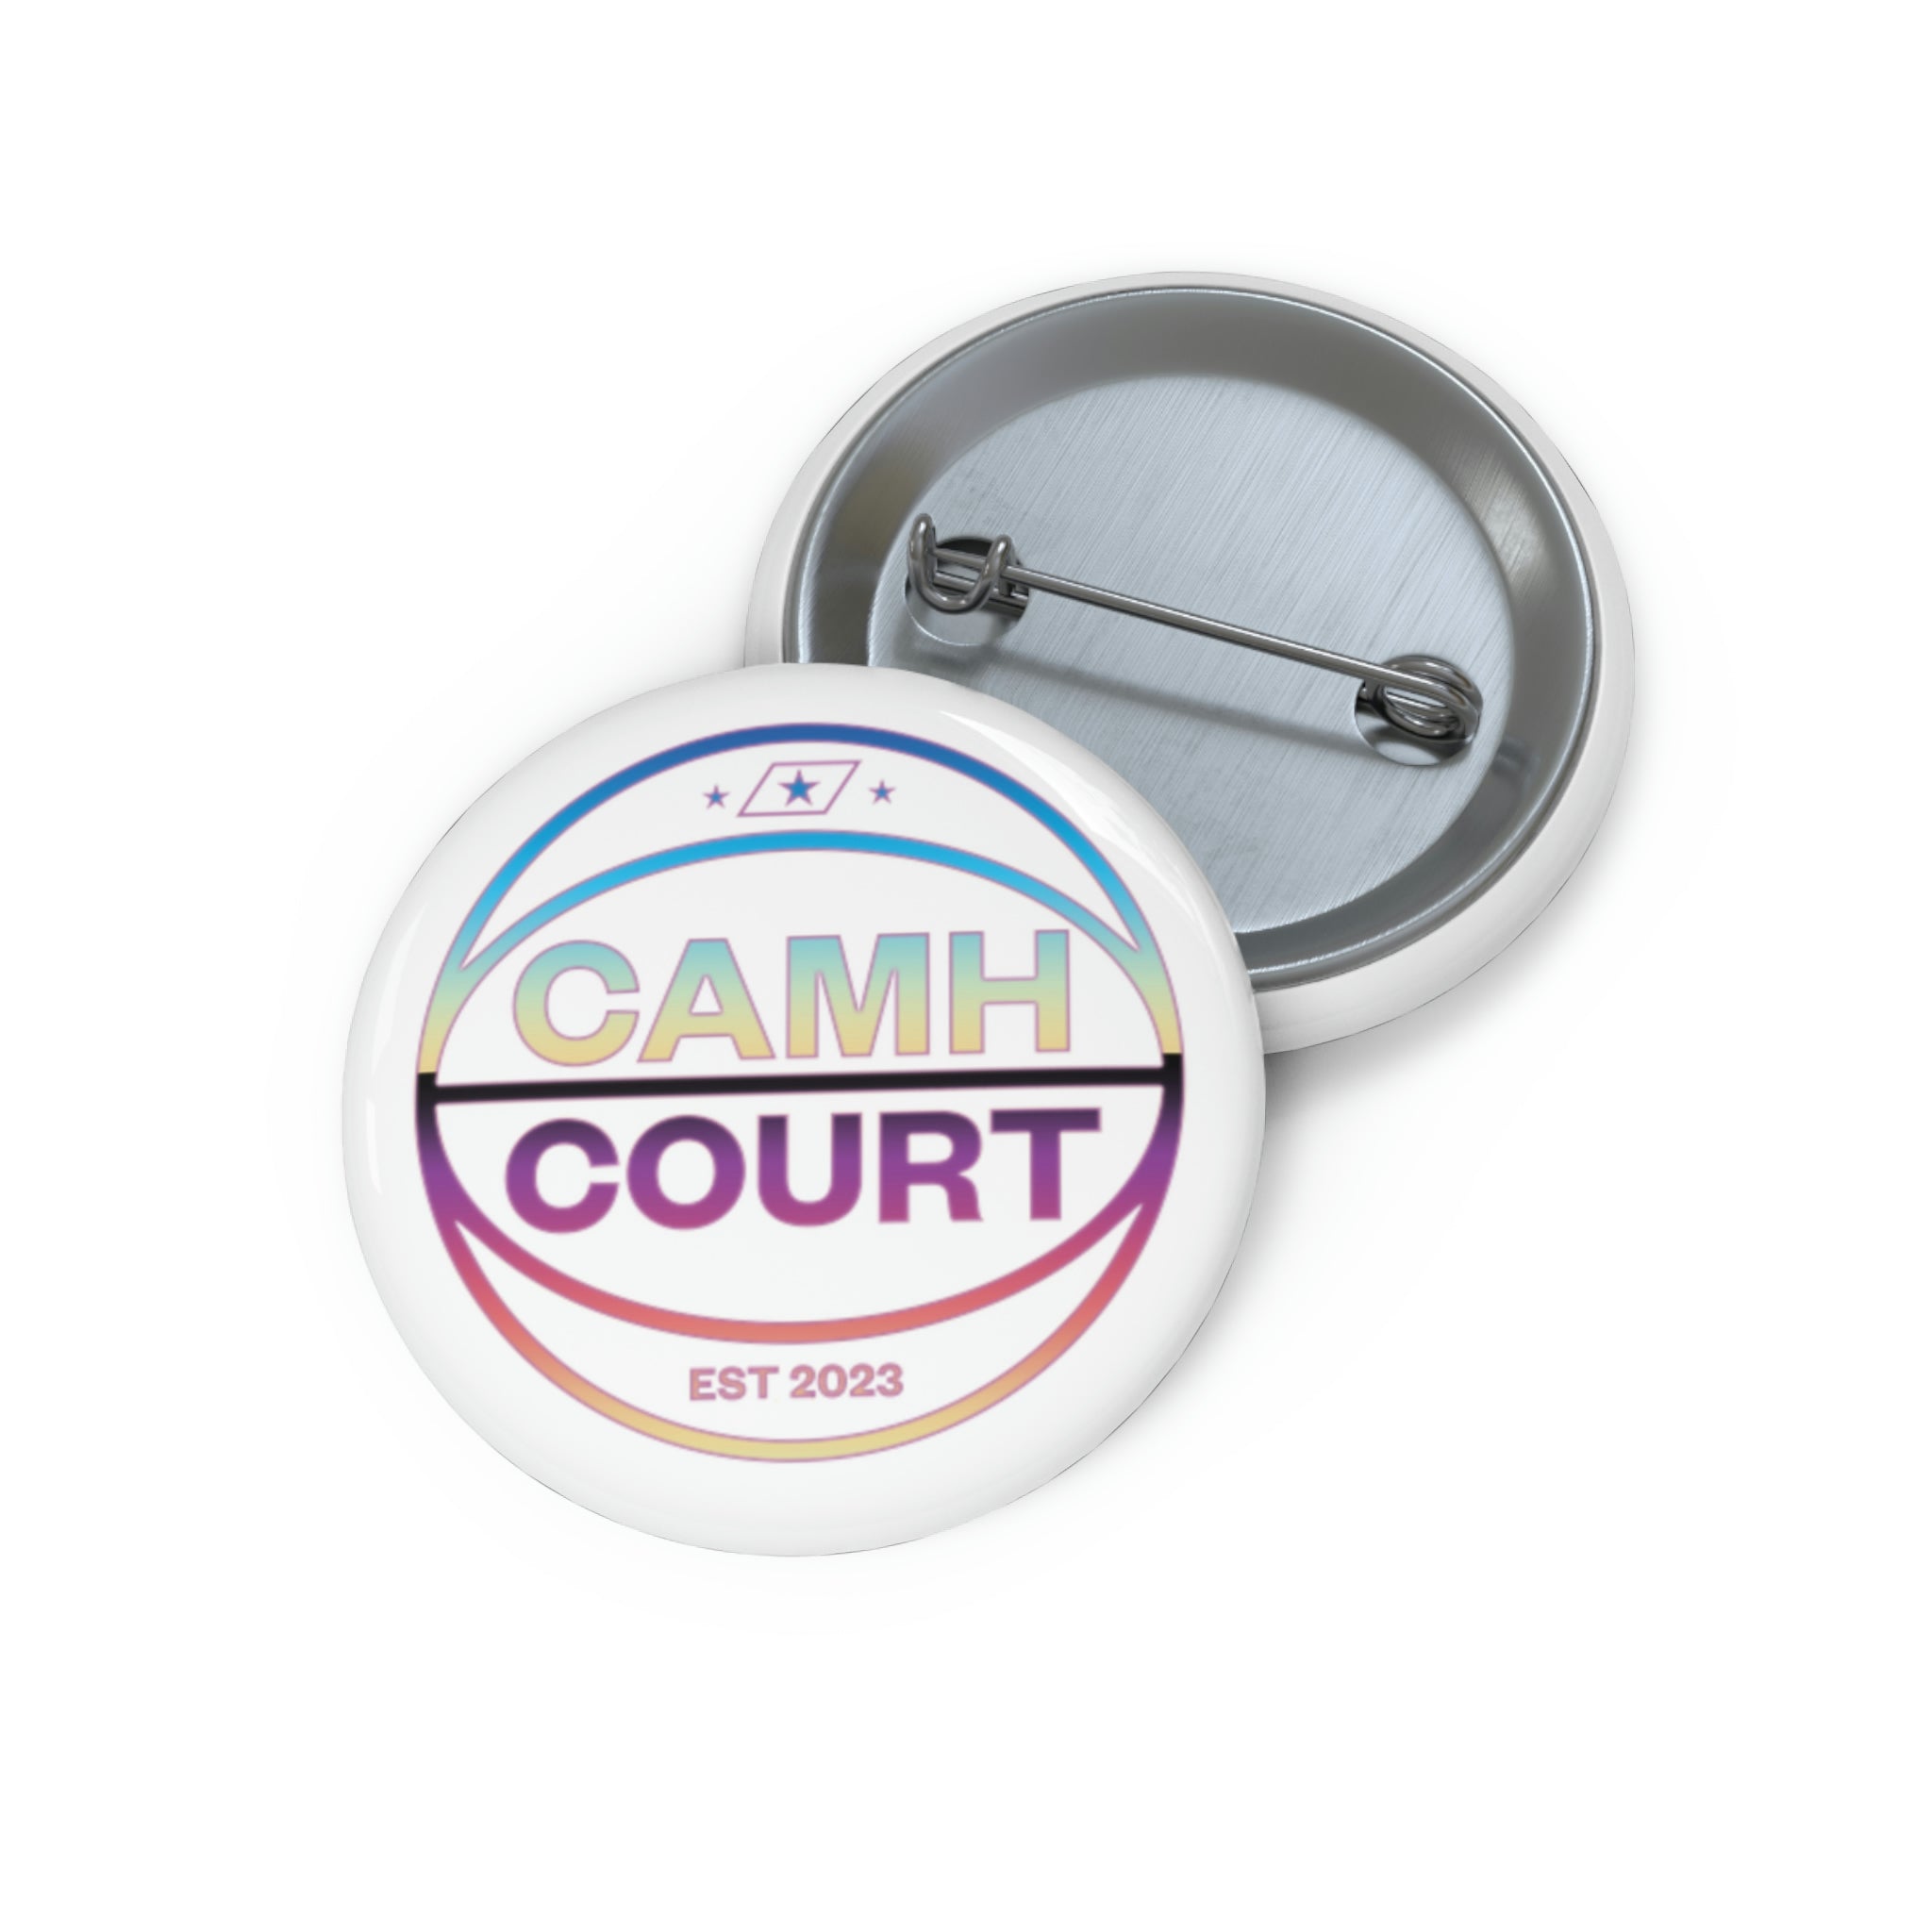 CAMH COURT Buttons